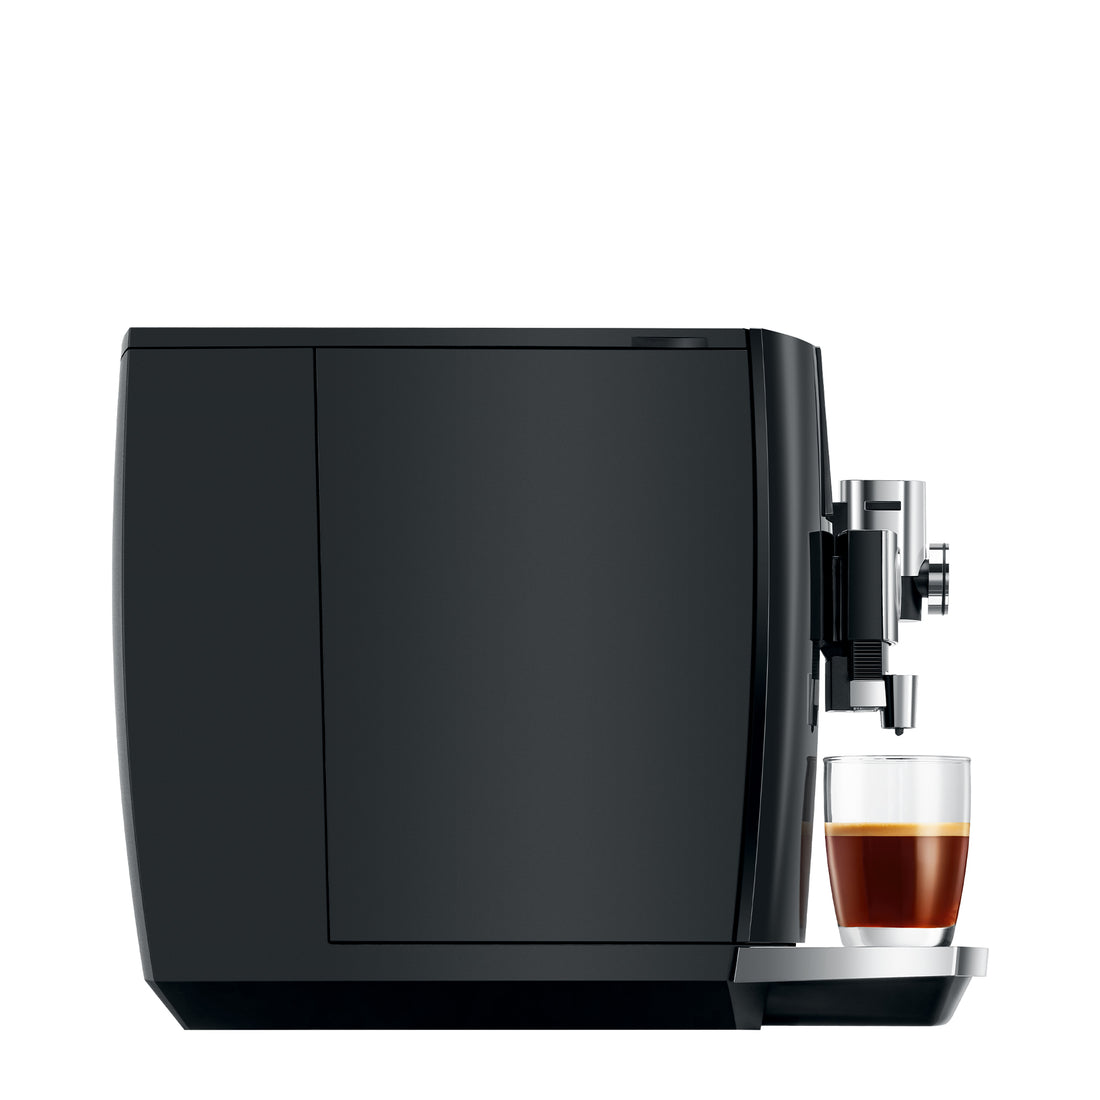 JURA J8 Super-Automatic Espresso Machine - Piano Black